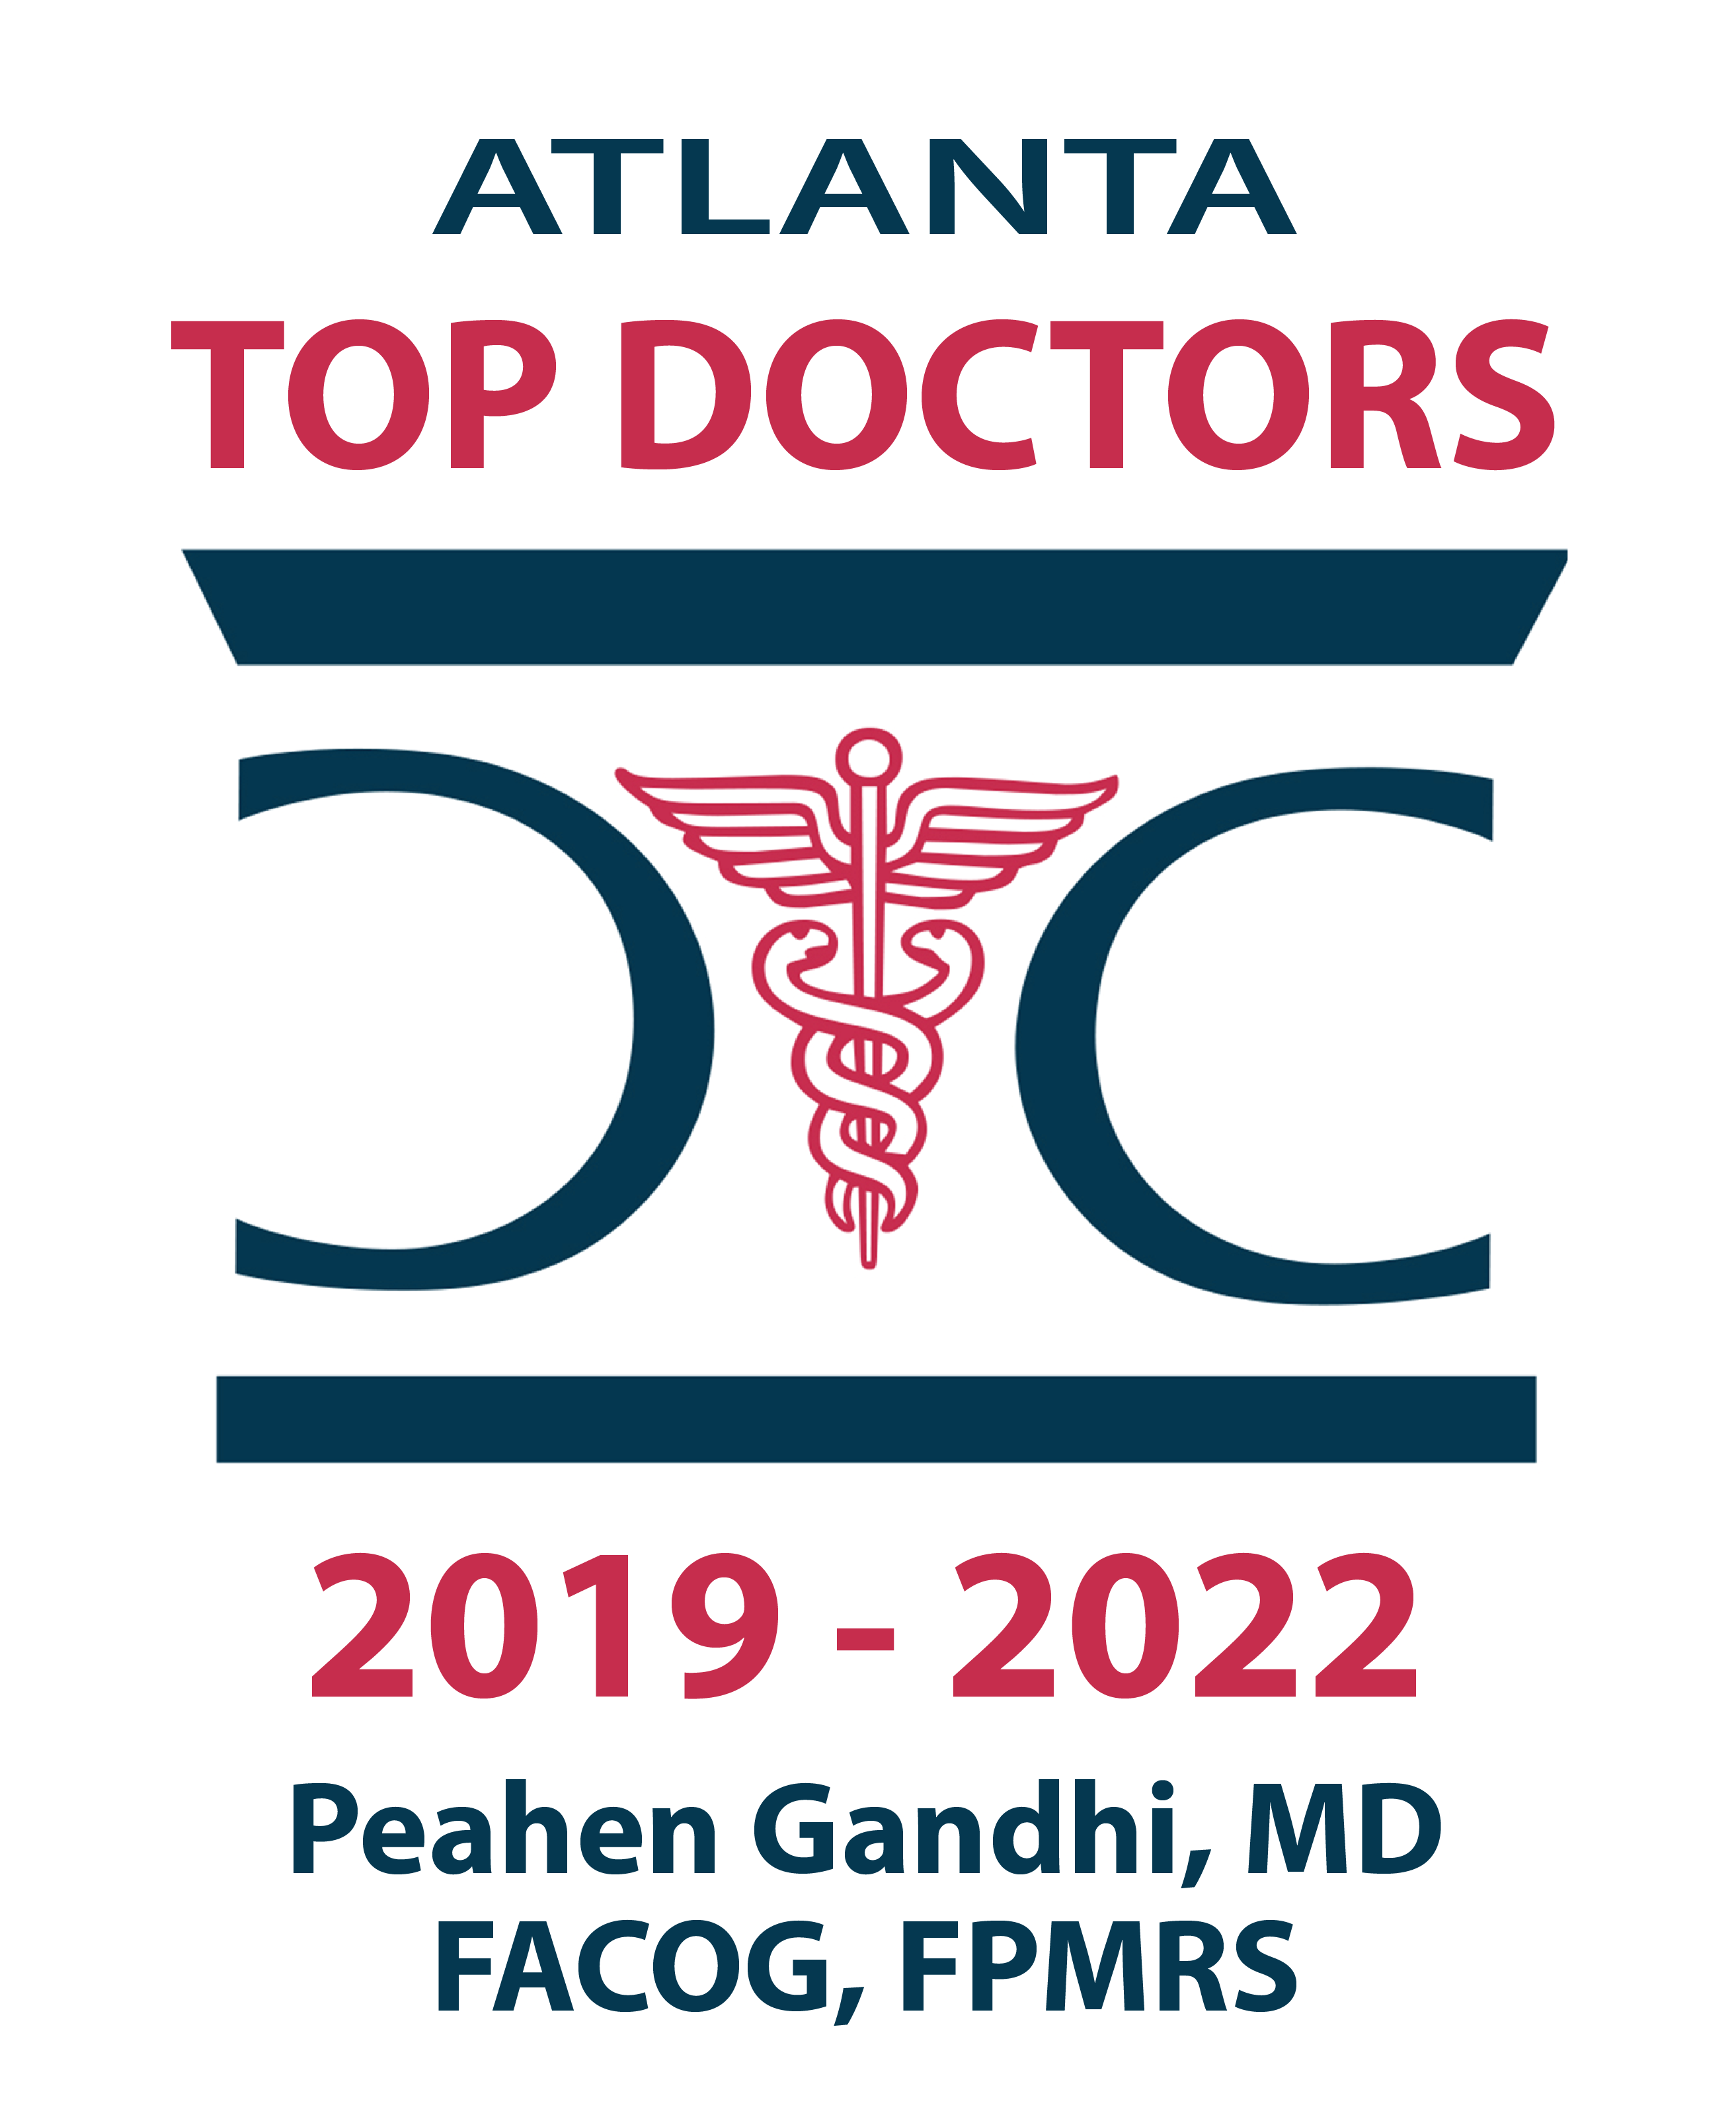 Atlanta Top Doctor Peahen Gandhi, MD, FACOG, FPMRS